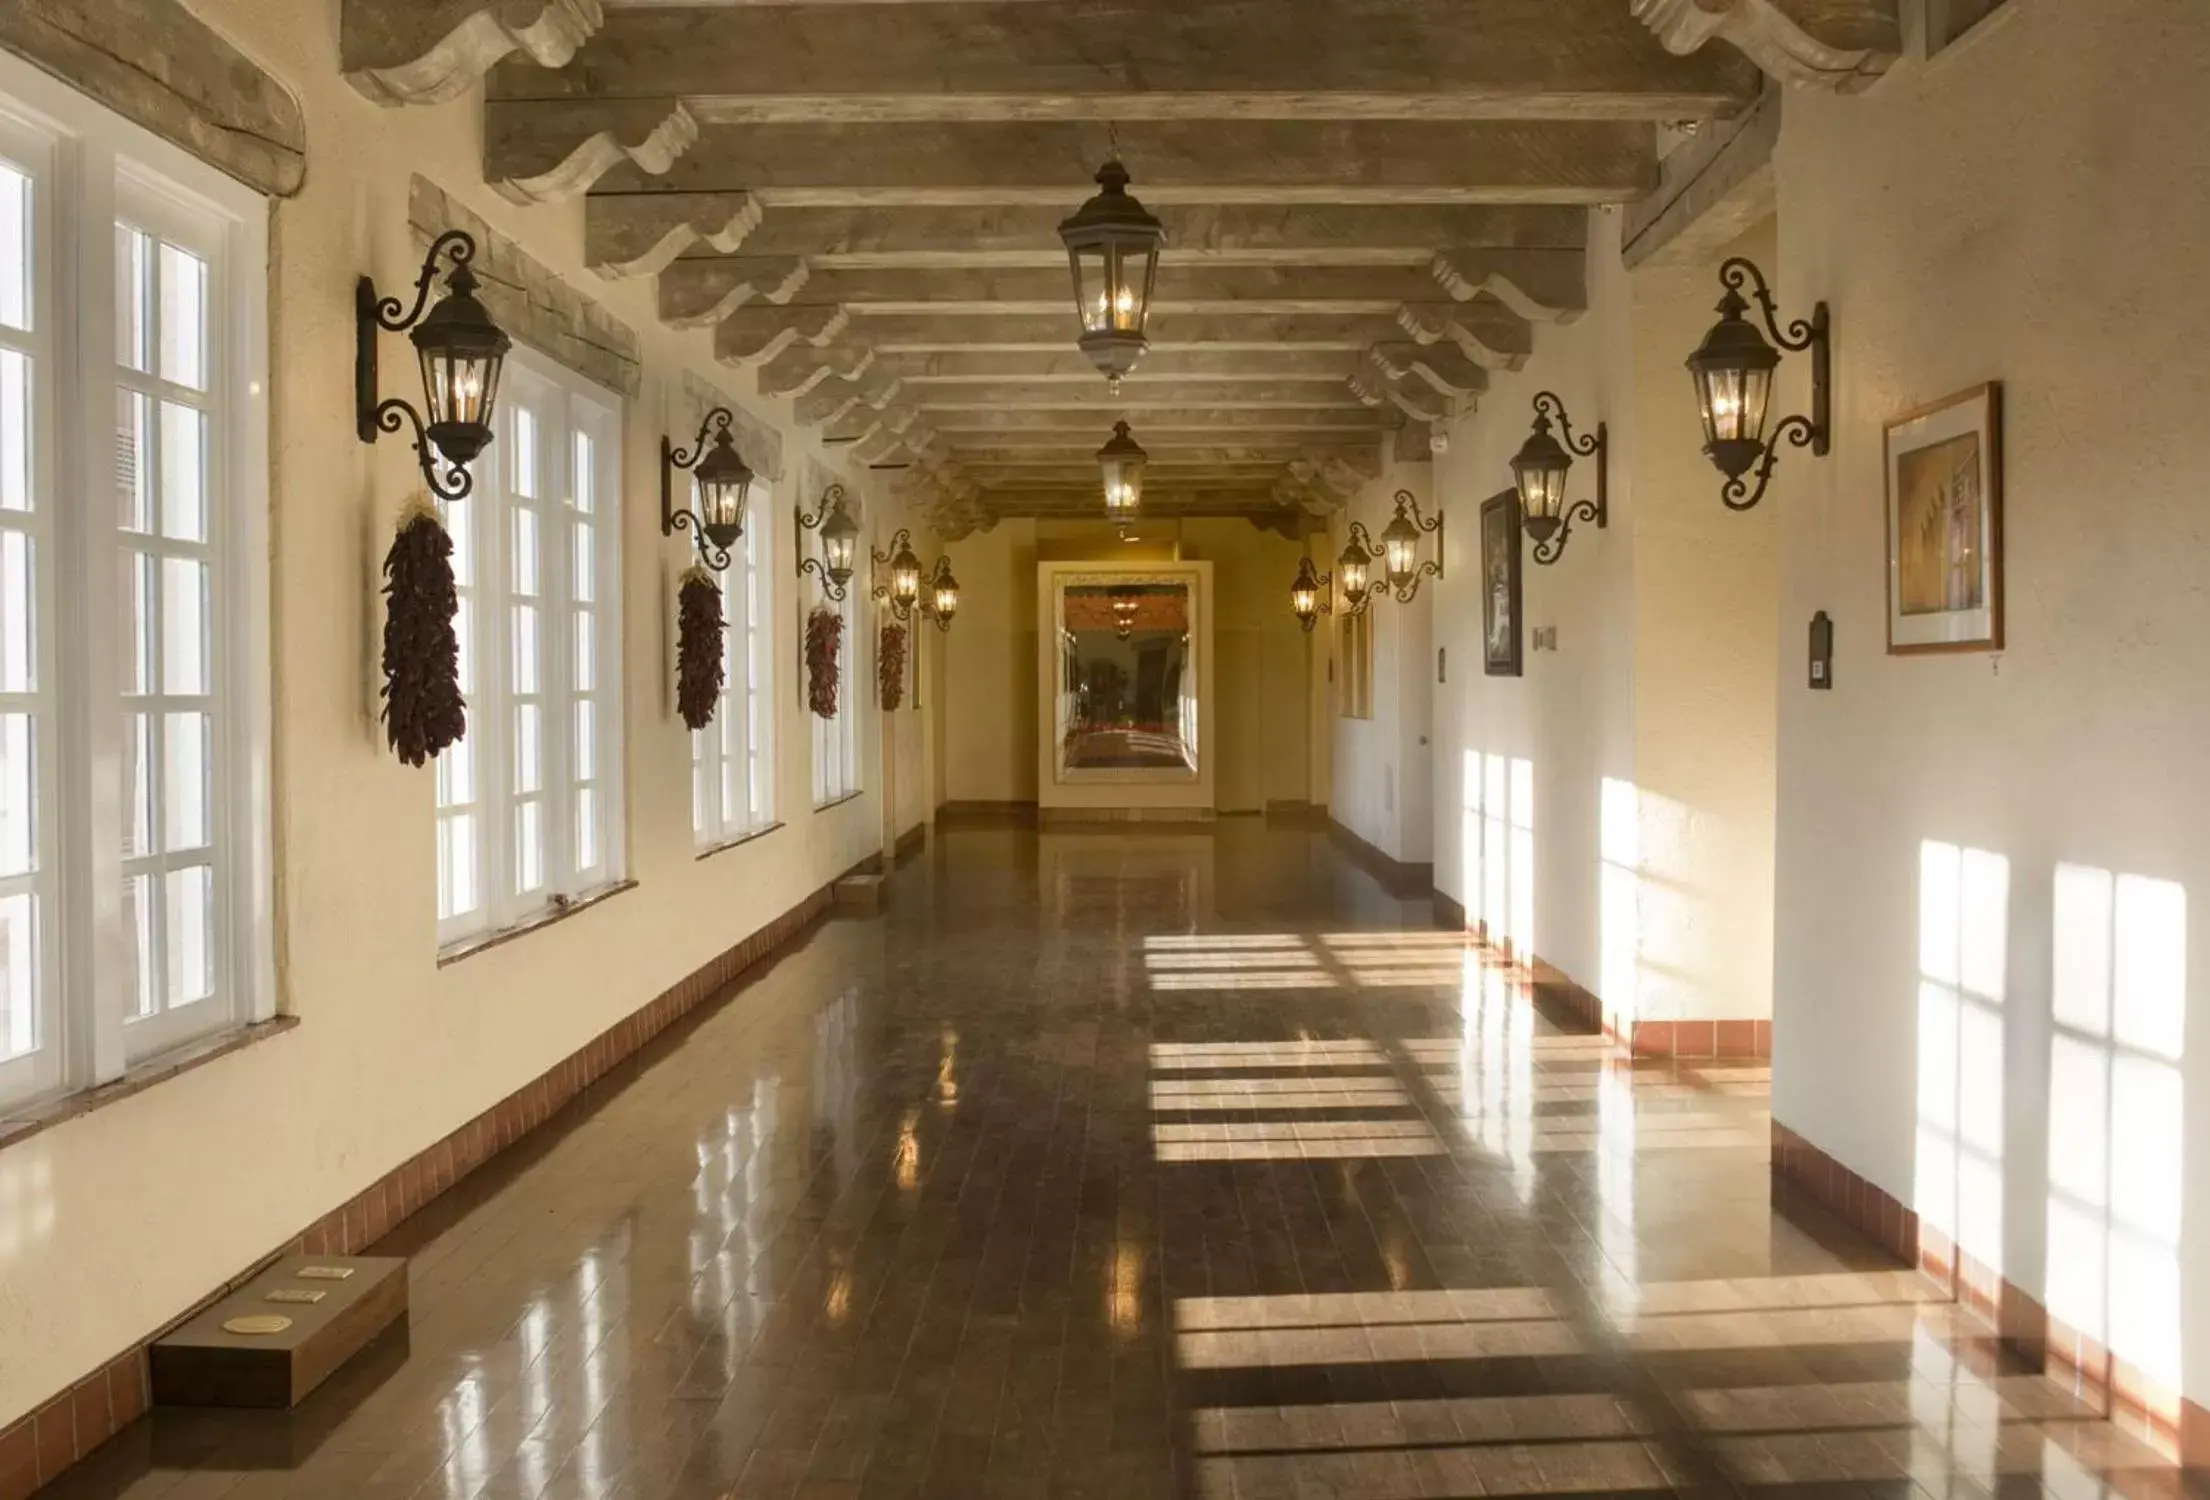 Lobby or reception in Hilton Santa Fe Historic Plaza